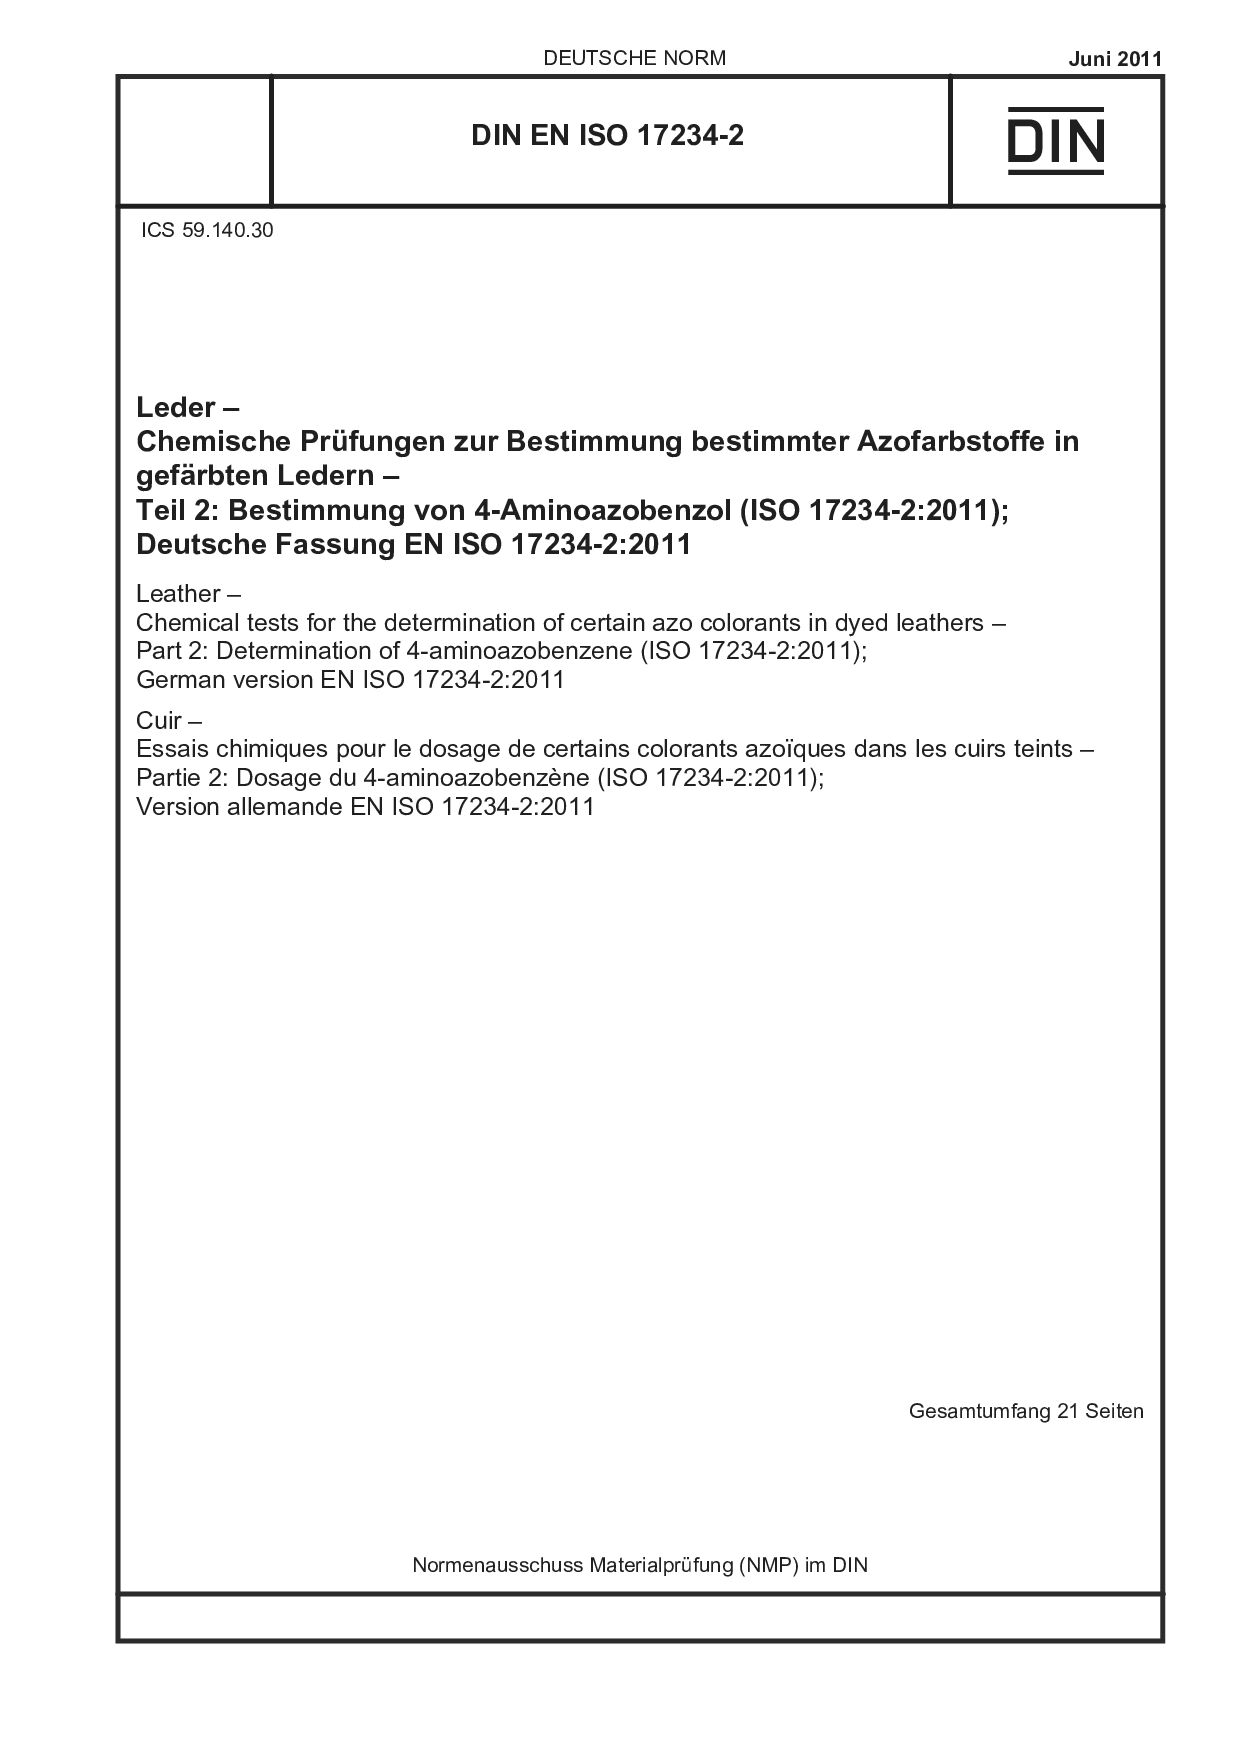 DIN EN ISO 17234-2:2011